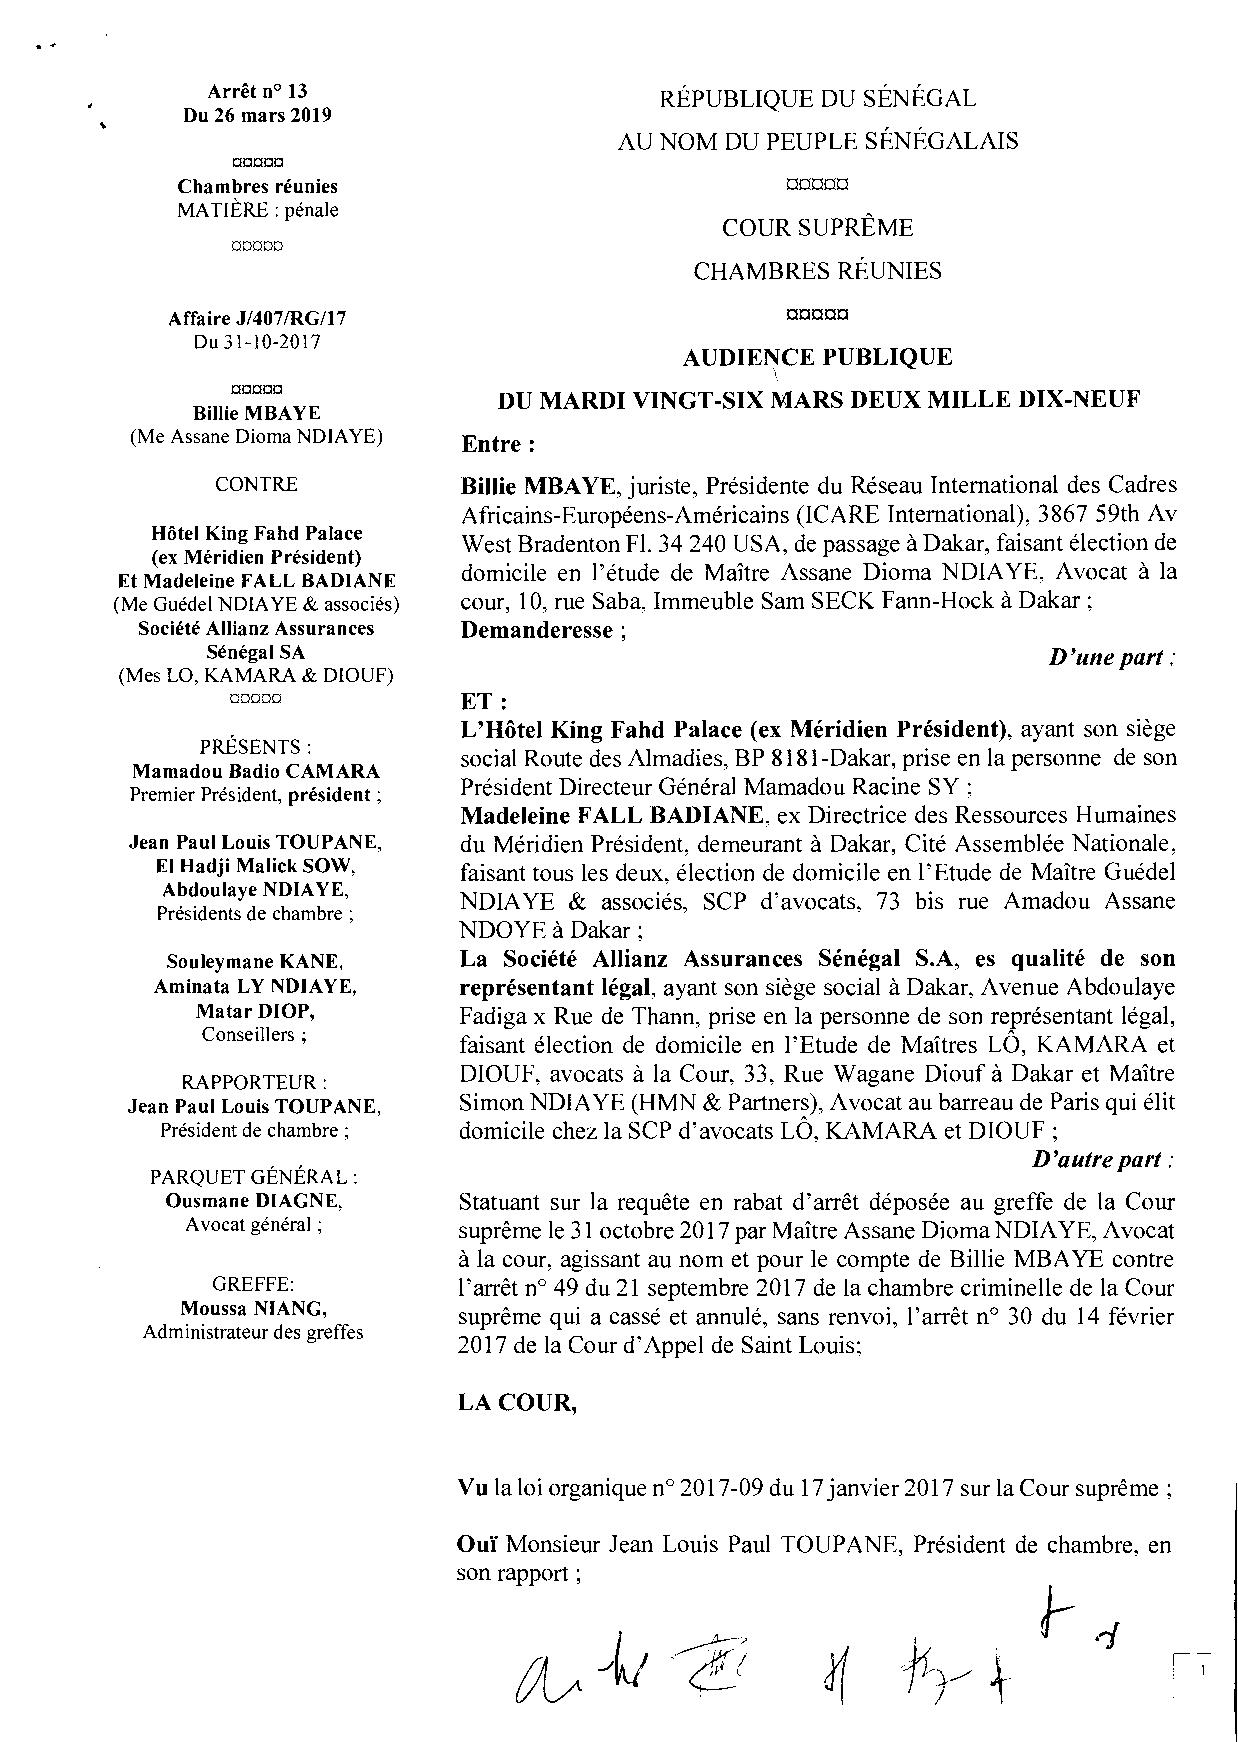 Cour suprÃªme: La juriste Billie Mbaye dÃ©boutÃ©e de son procÃ¨s contre Racine Sy et lâhÃ´tel King Fahd Palace ( Documents )